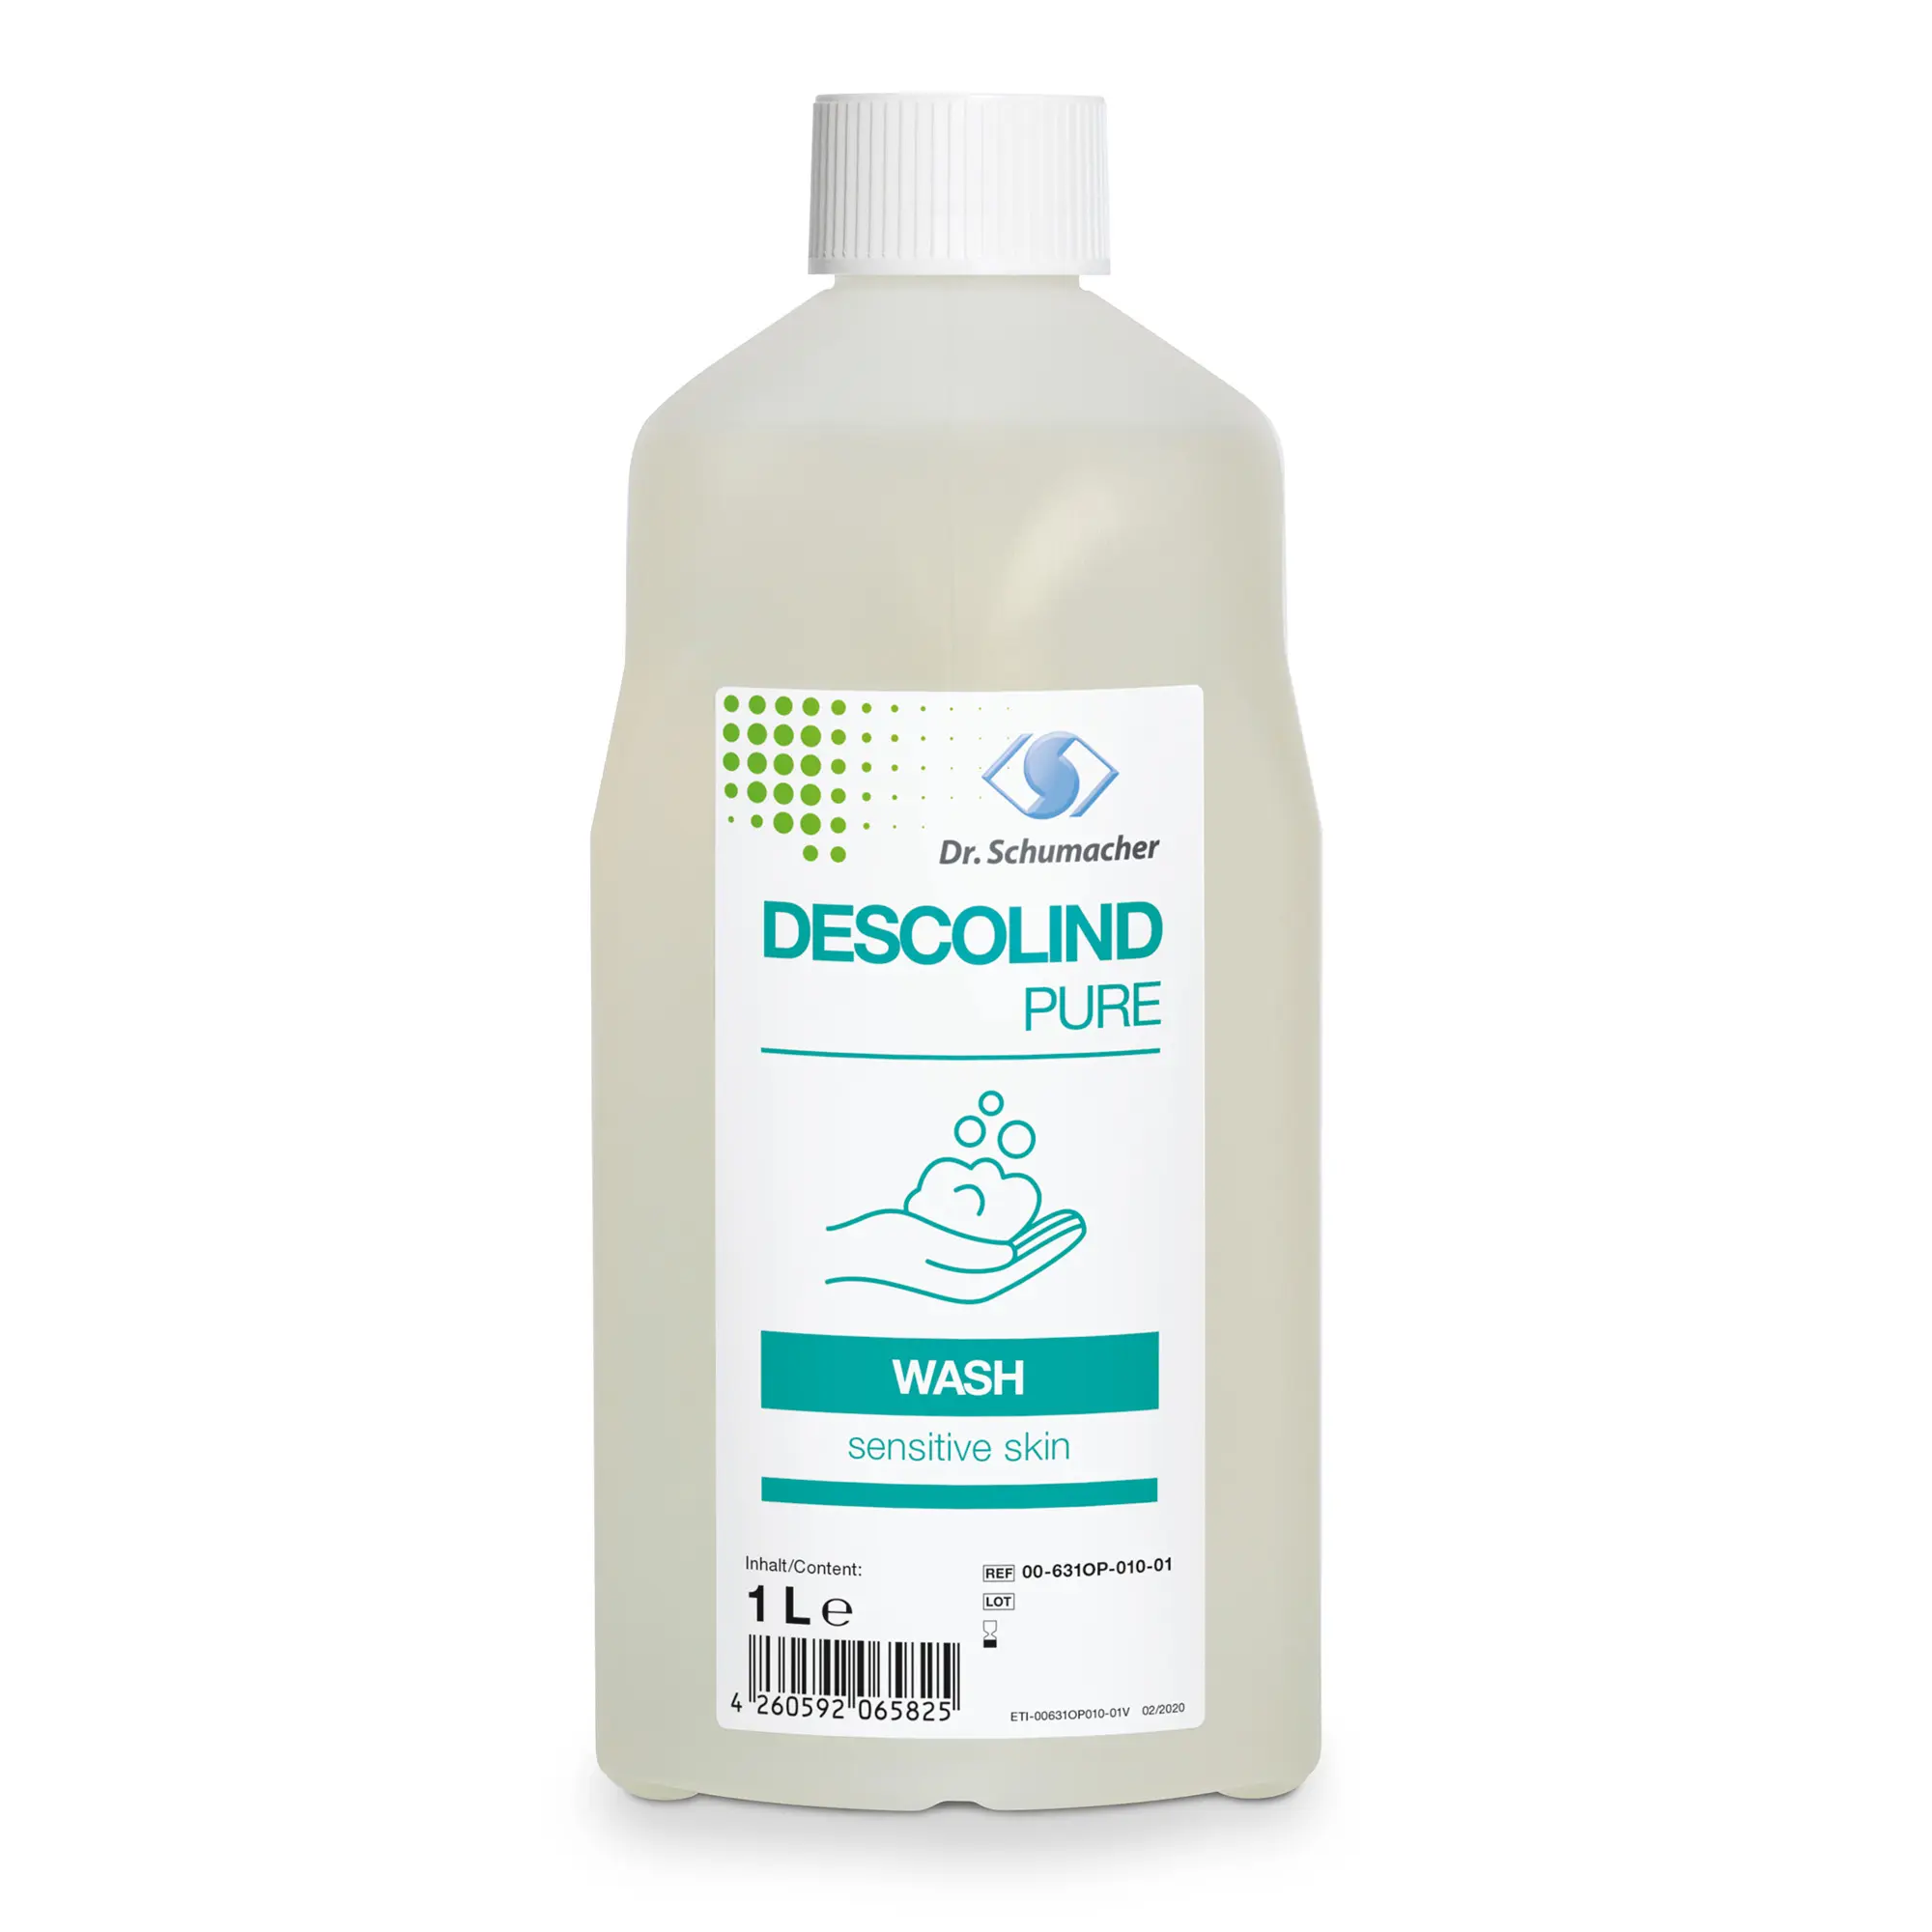 Dr. Schumacher Descolind Pure Wash Waschlotion 1 Liter 00-631OP-010-01_1